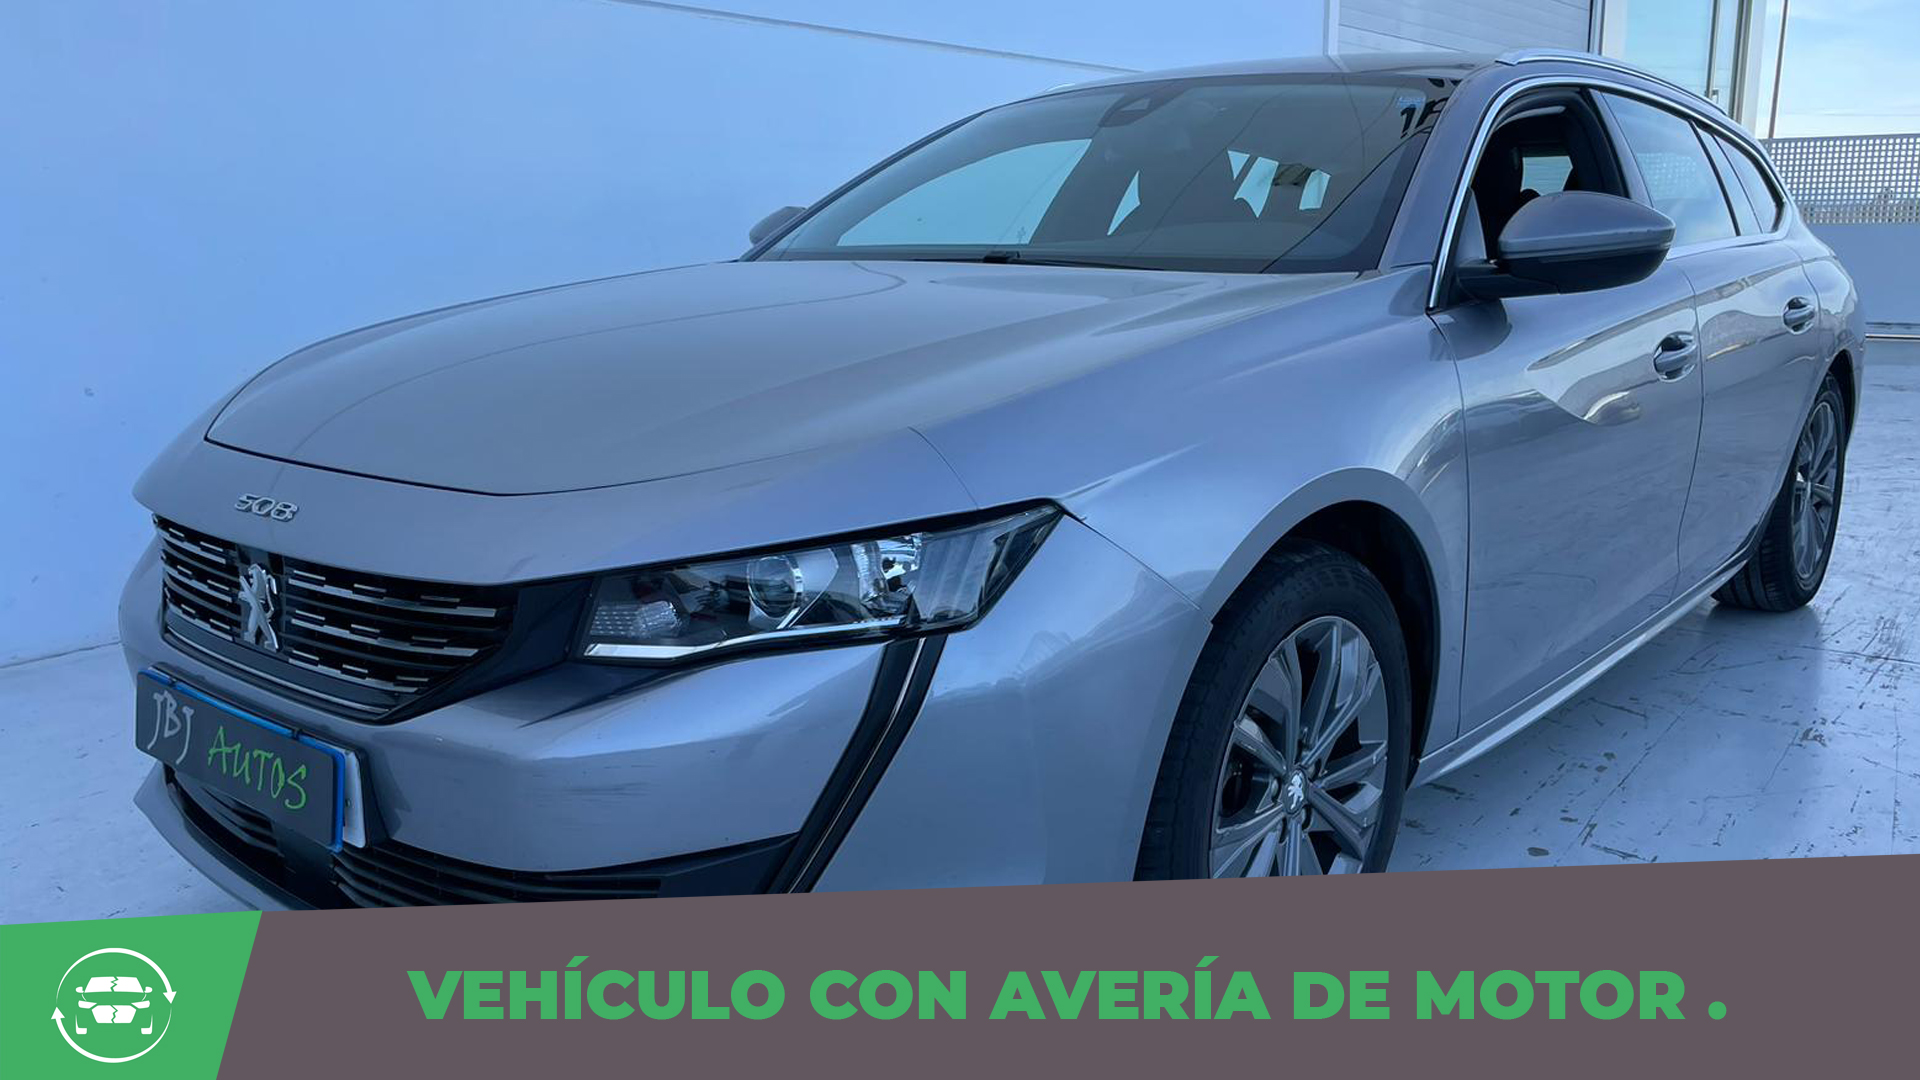 BlueHDi 130 cv. S&S -Avería Motor- 10.500€